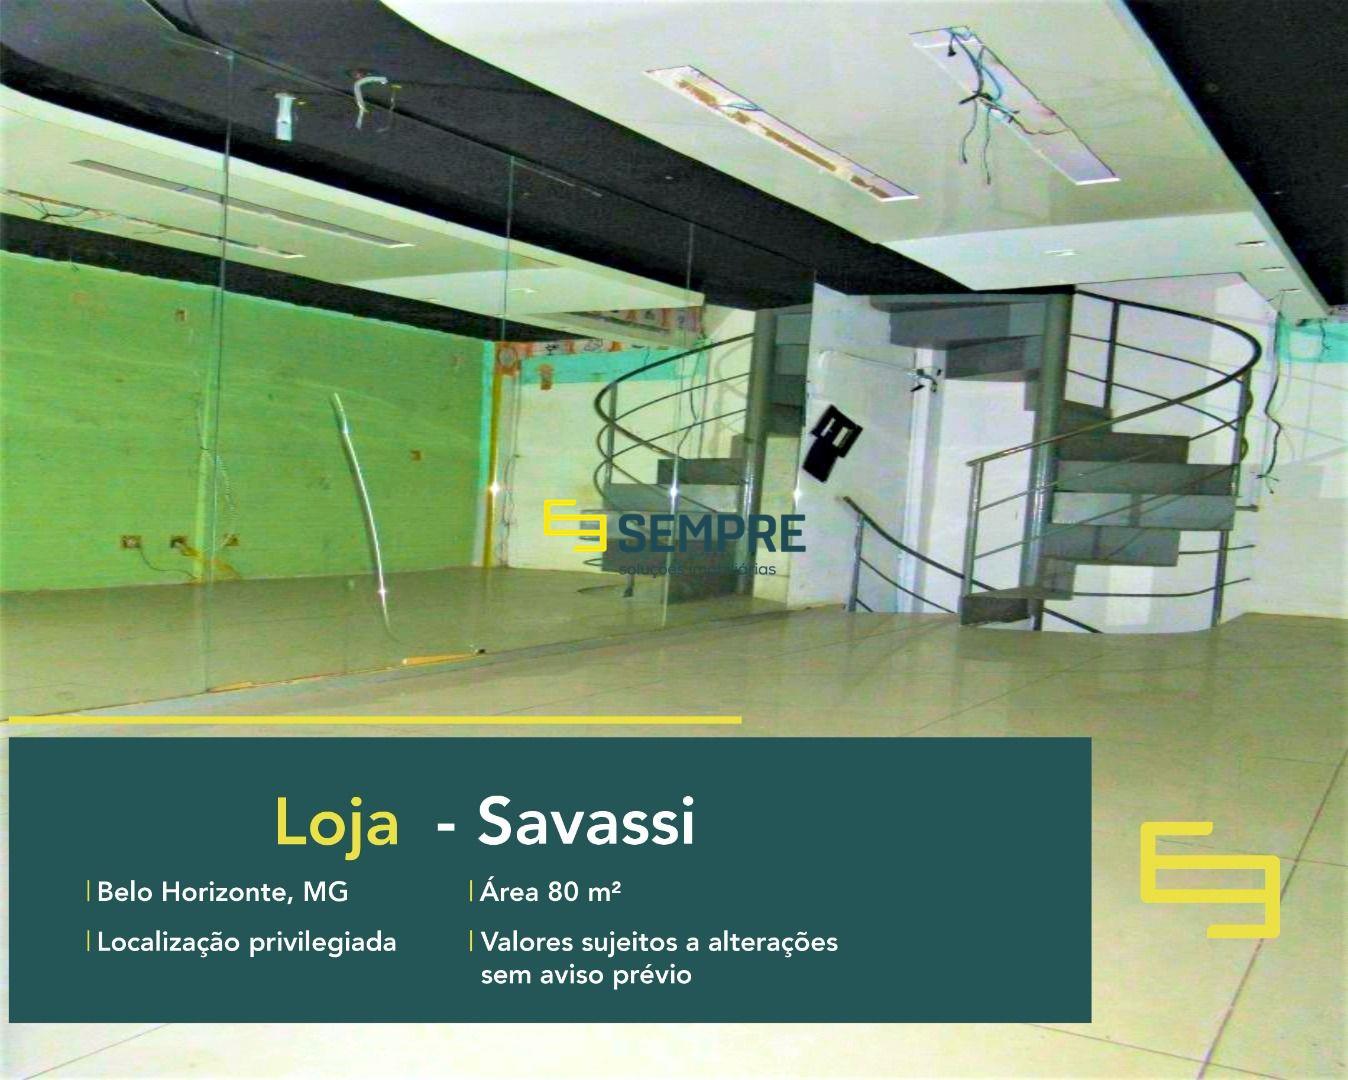 Loja a venda na Savassi com excelente localização. O estabelecimento comercial para alugar, conta sobretudo, com área de 80 m².